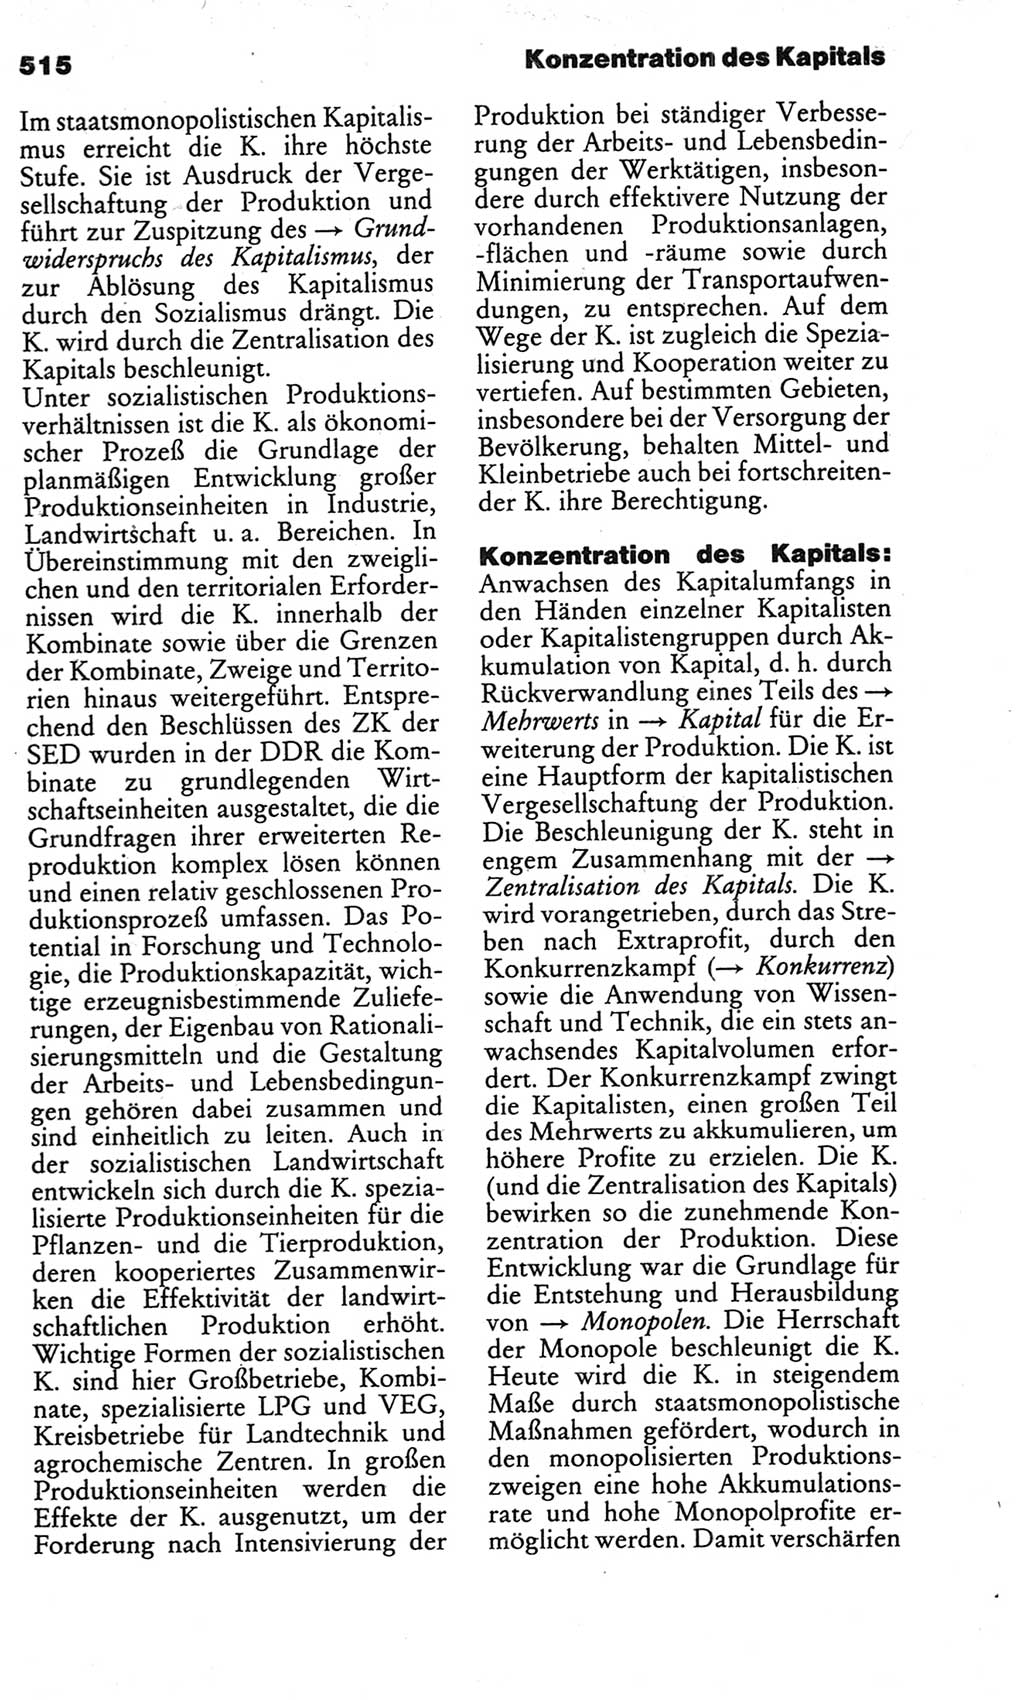 Kleines politisches Wörterbuch [Deutsche Demokratische Republik (DDR)] 1986, Seite 515 (Kl. pol. Wb. DDR 1986, S. 515)